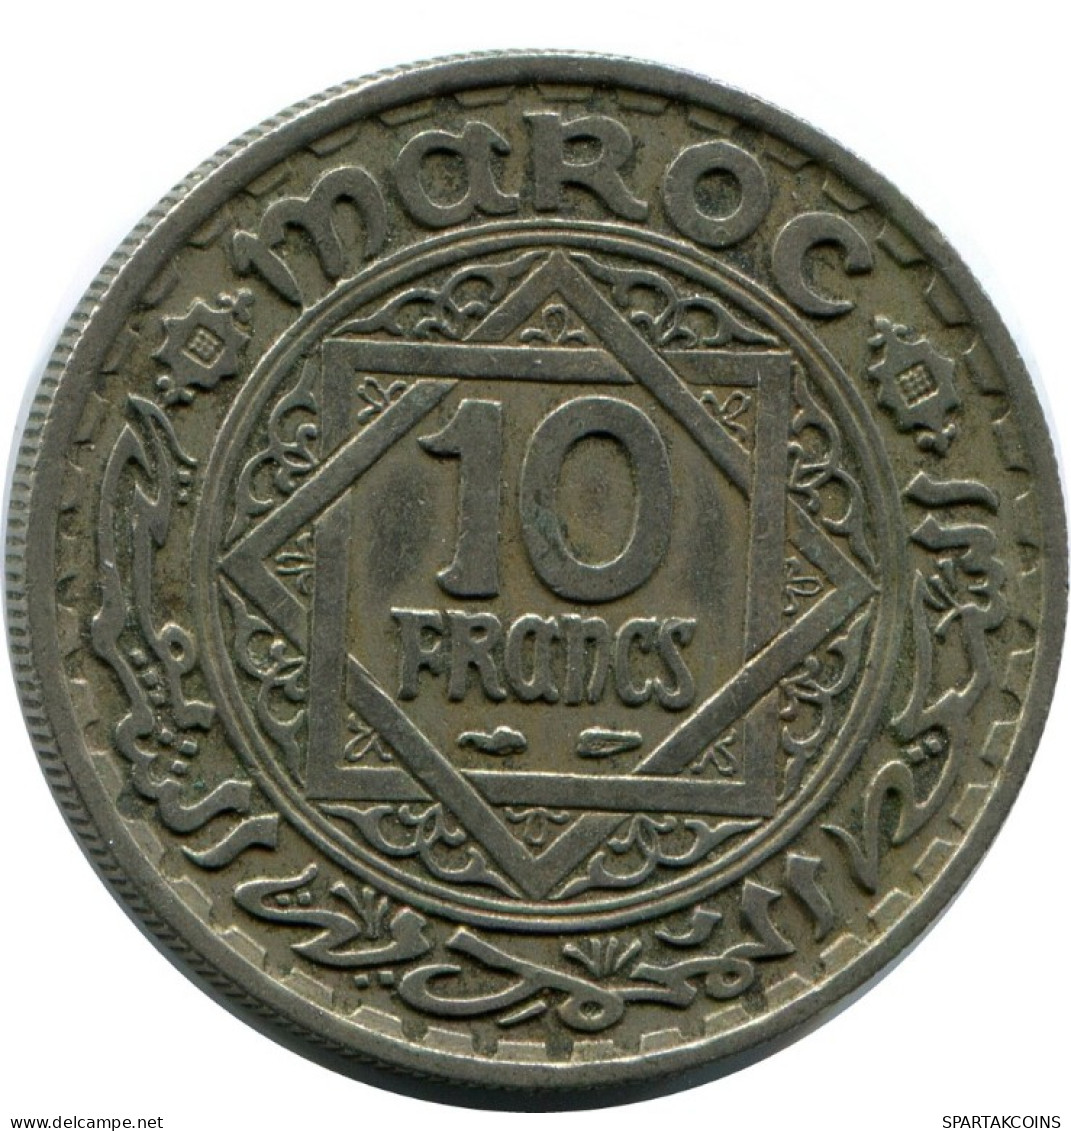 10 FRANCS 1952 MOROCCO Islamisch Münze #AH639.3.D.A - Maroc